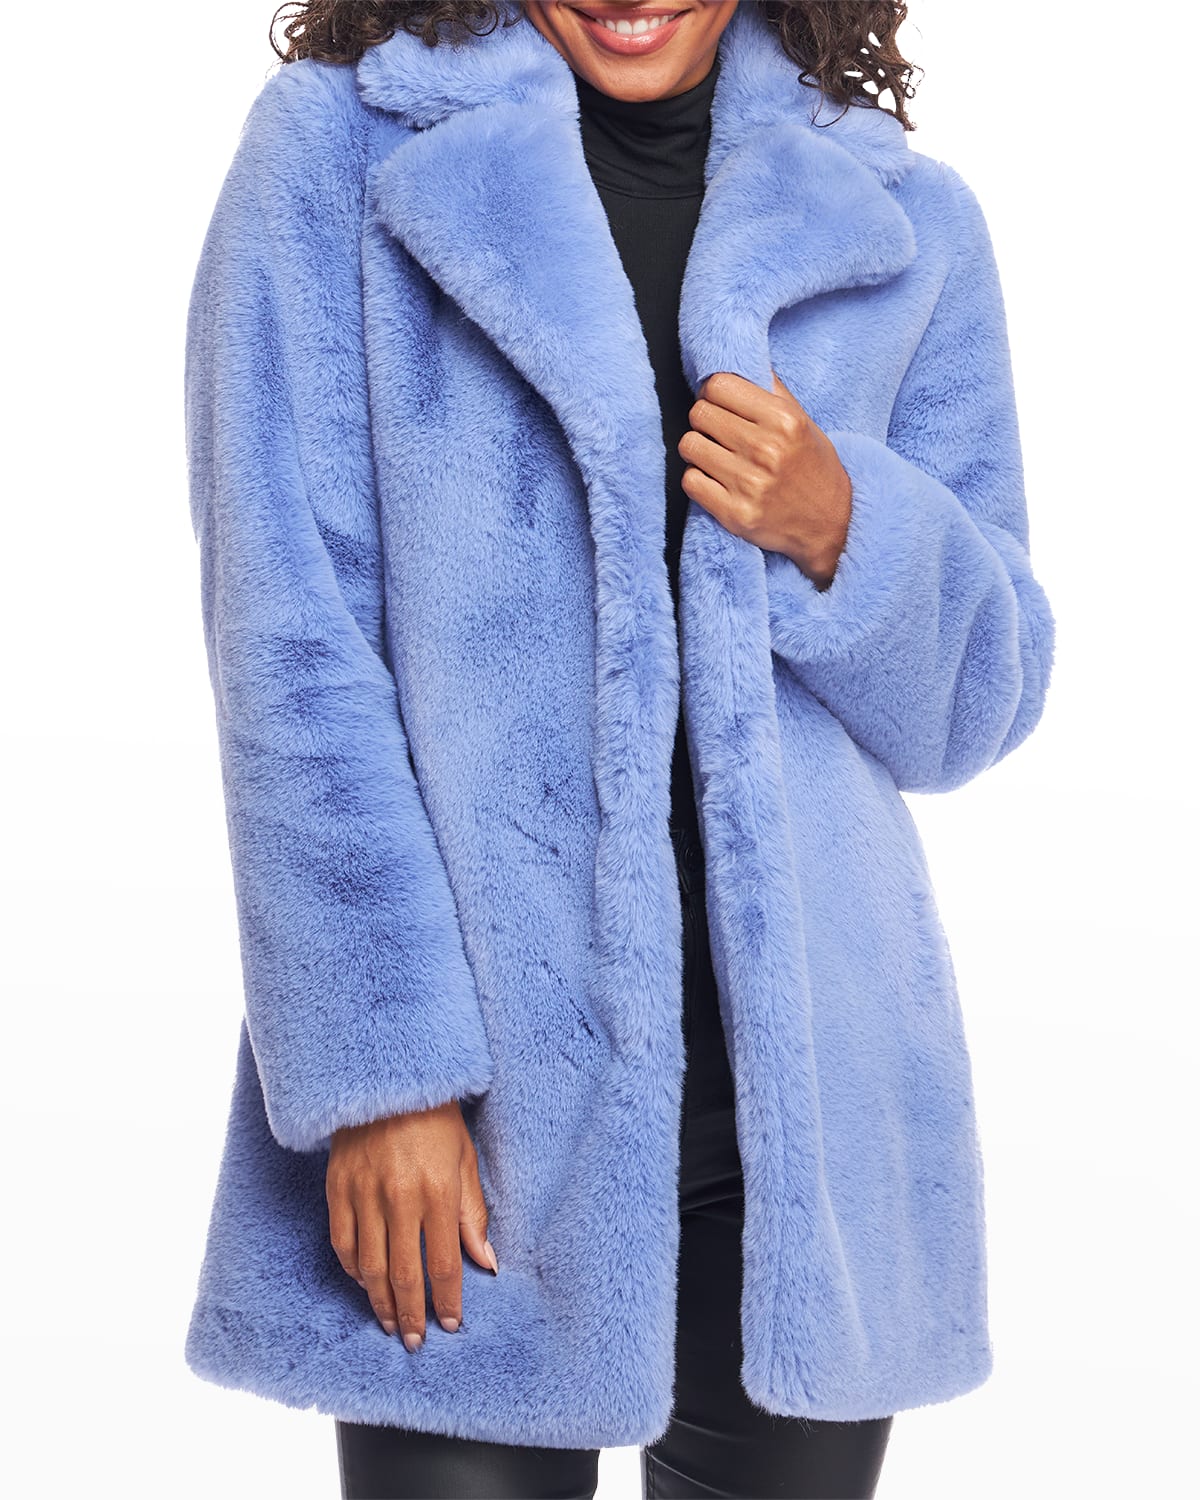 Fabulous Furs Le Mink Coat